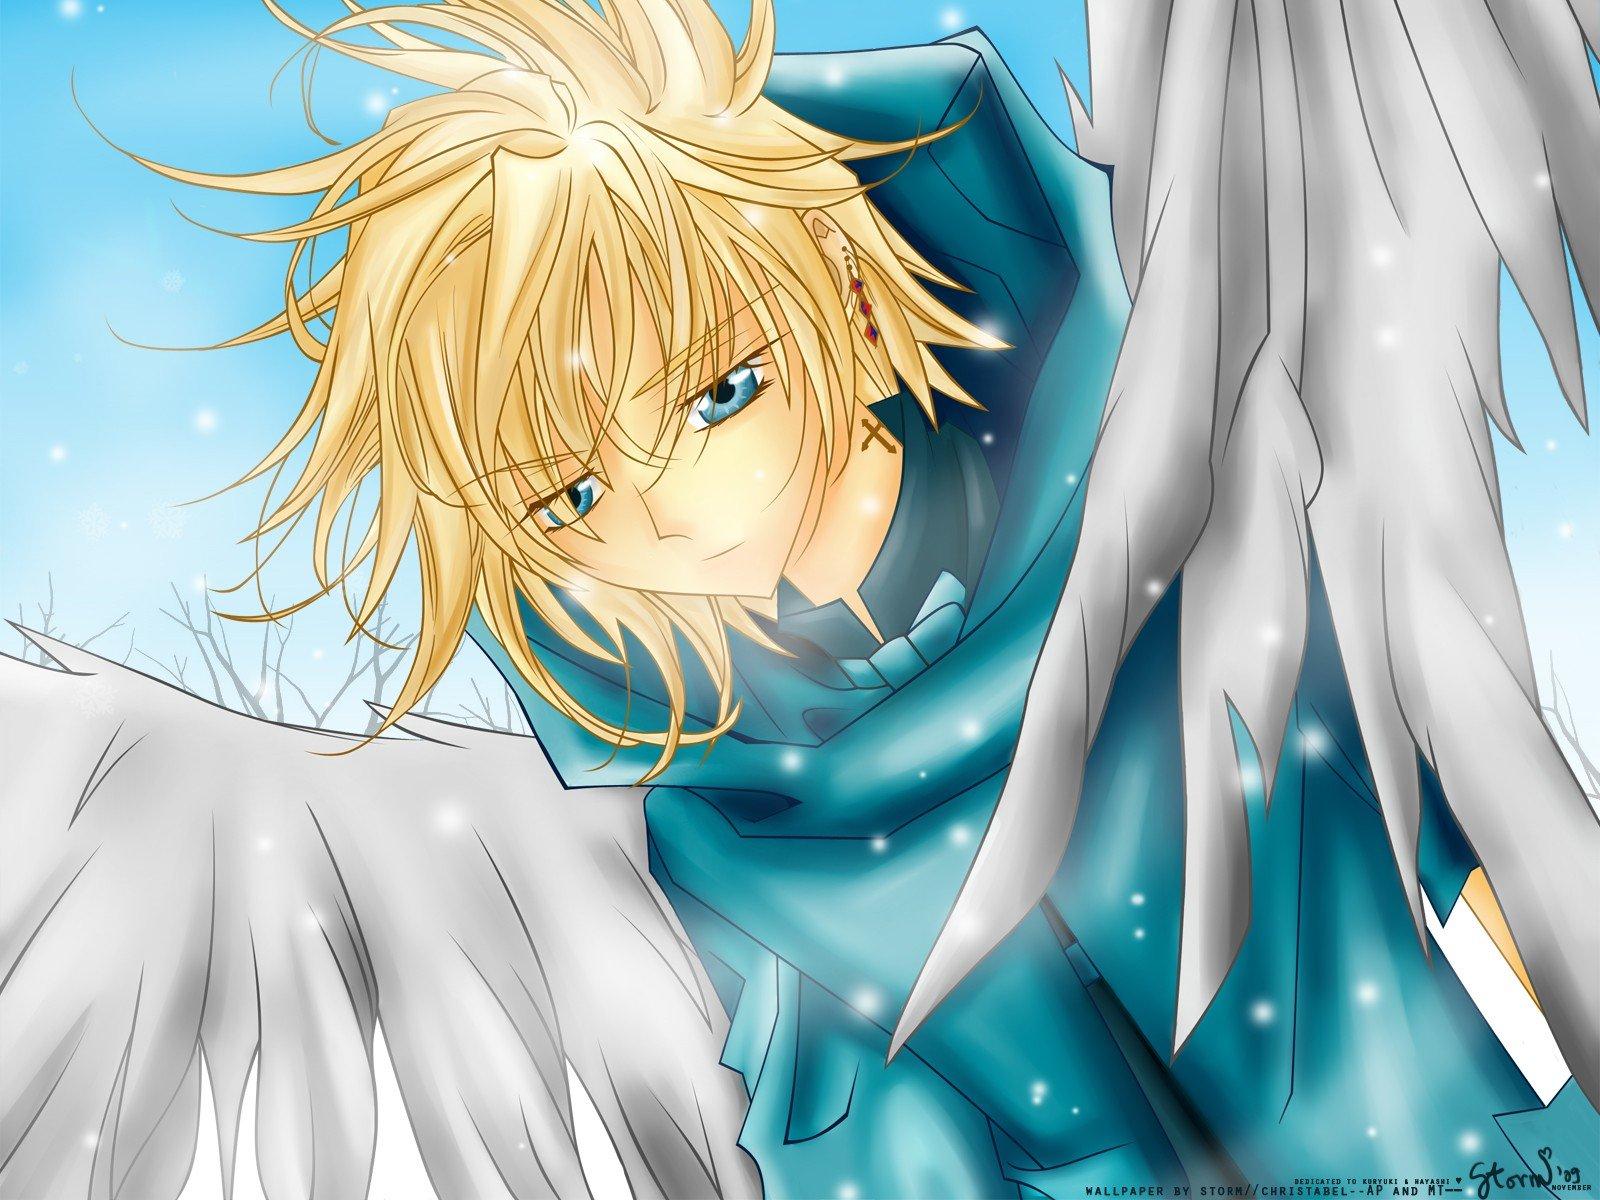 Anime-engel met zilveren vleugels · Creative Fabrica